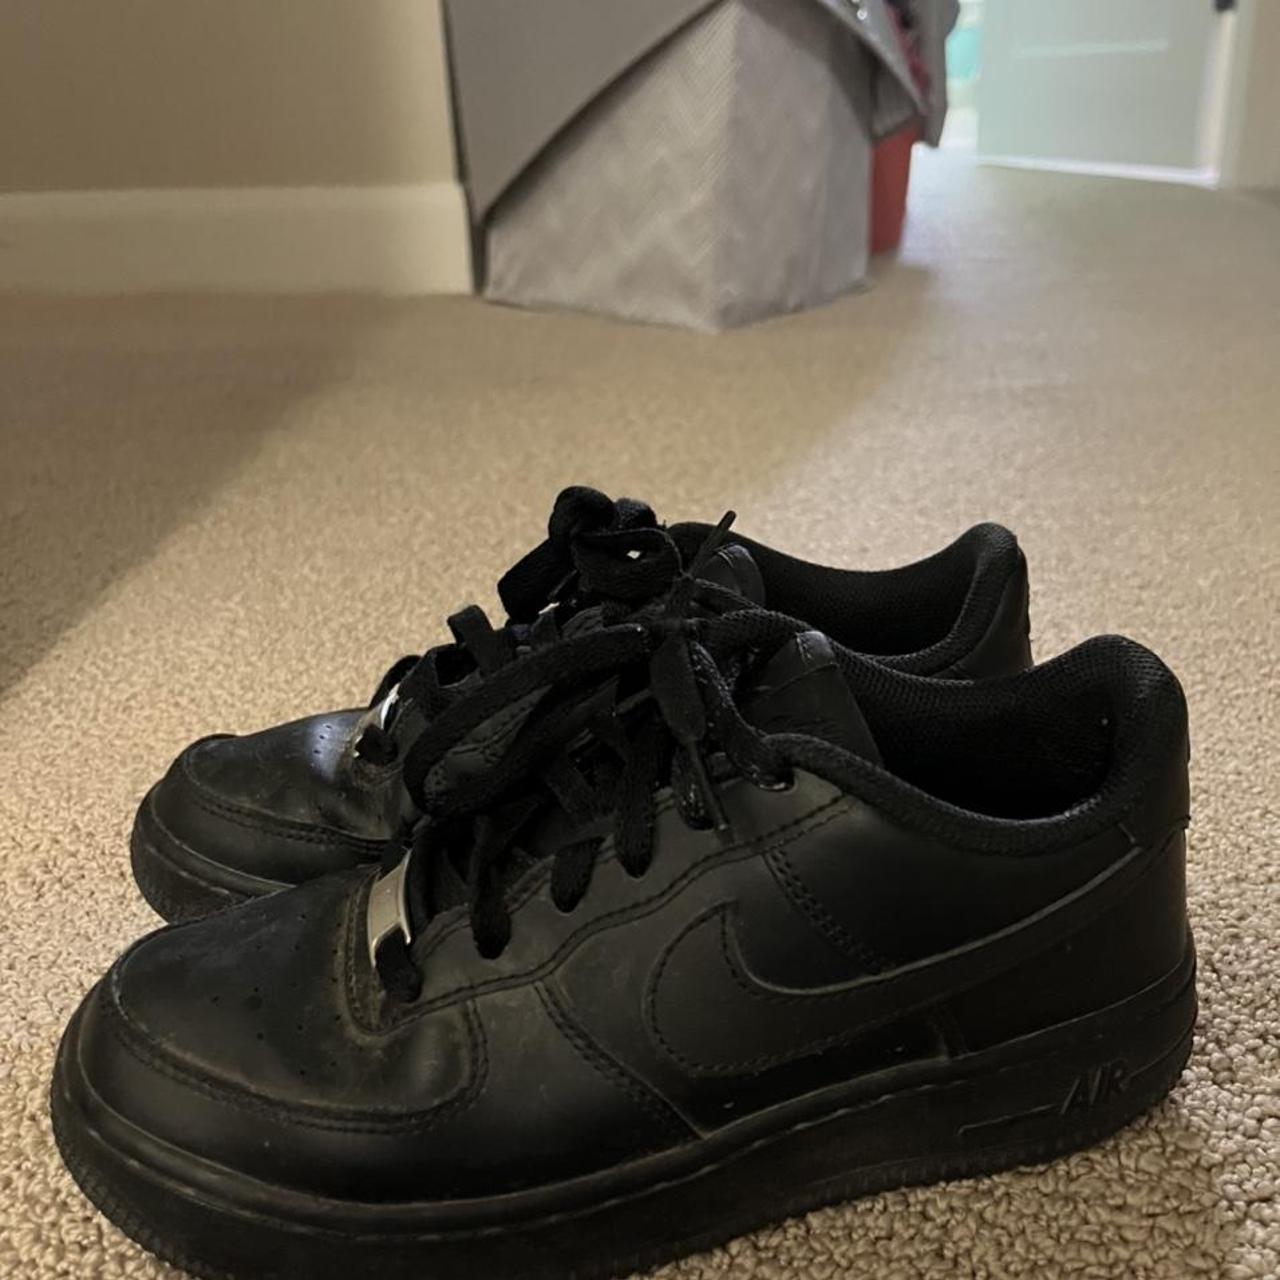 Nike Air Force 1 Low Shoe - 4.5Y - Black